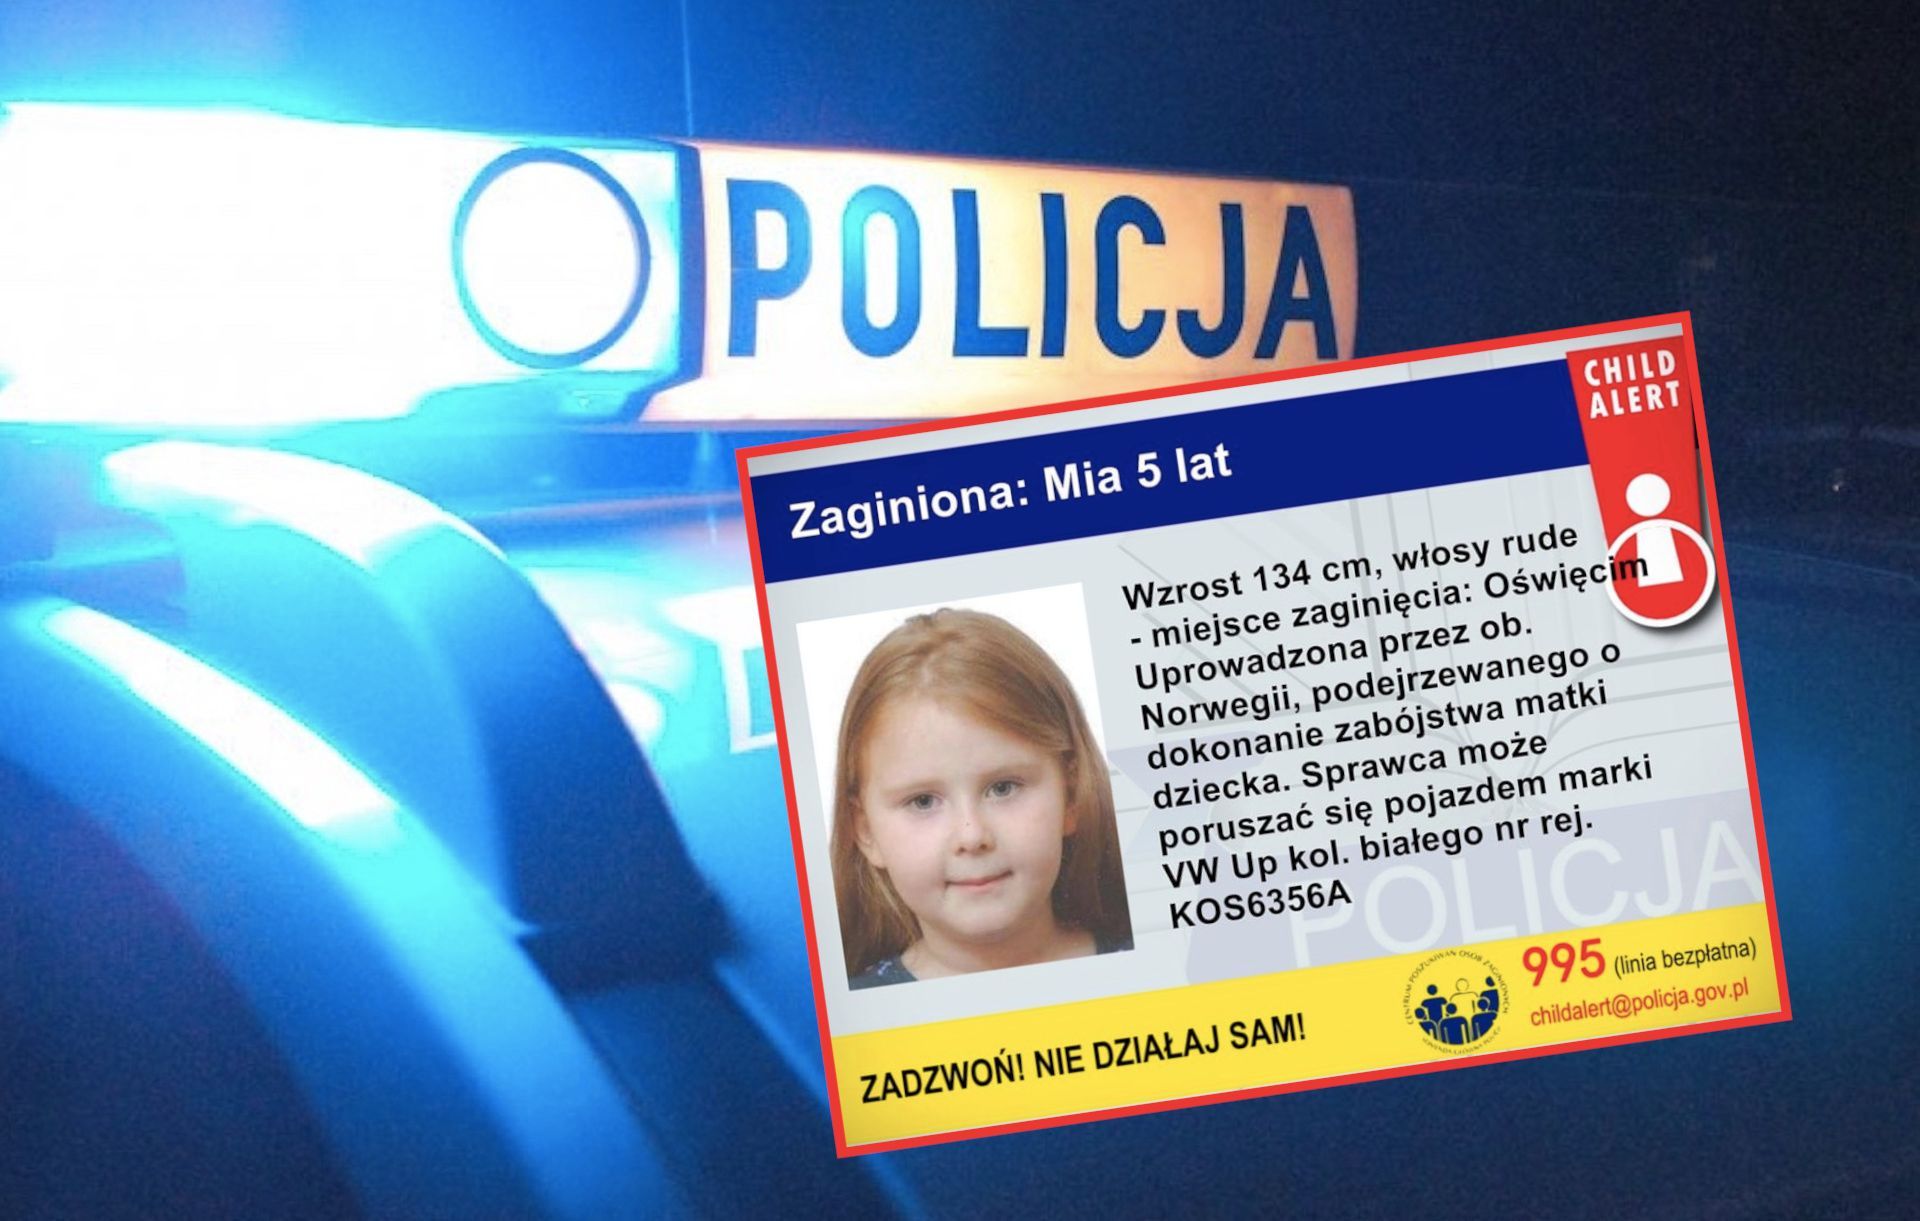 Policja uruchomiła Child Alert w związku z zaginięciem 5-letniej Mii.